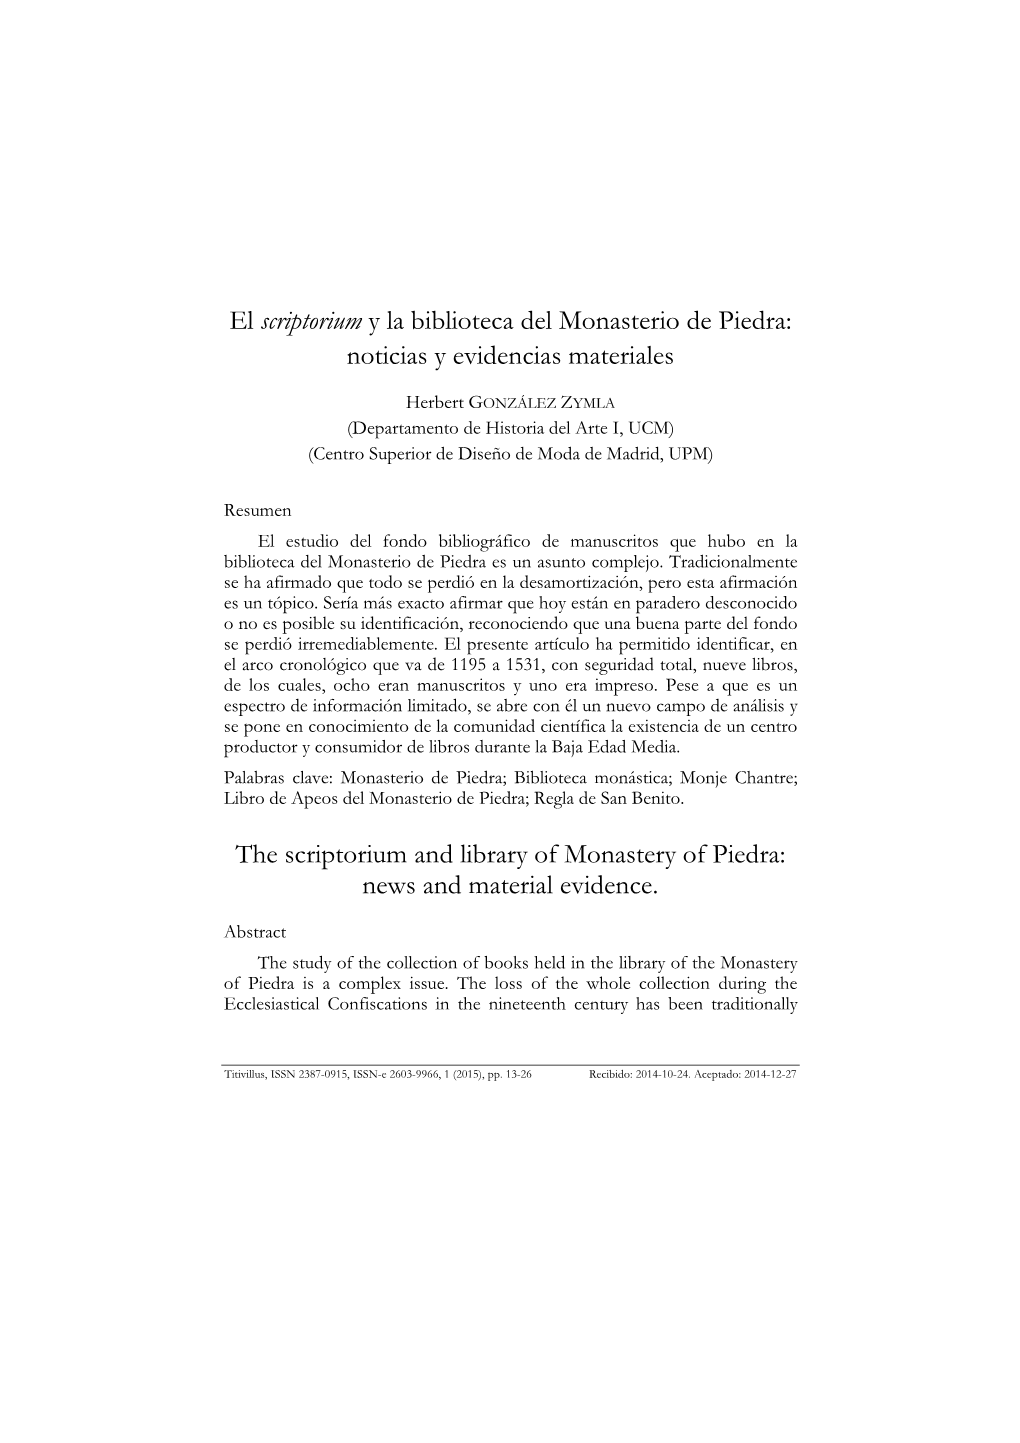 El Scriptorium Y La Biblioteca Del Monasterio De Piedra: Noticias Y Evidencias Materiales